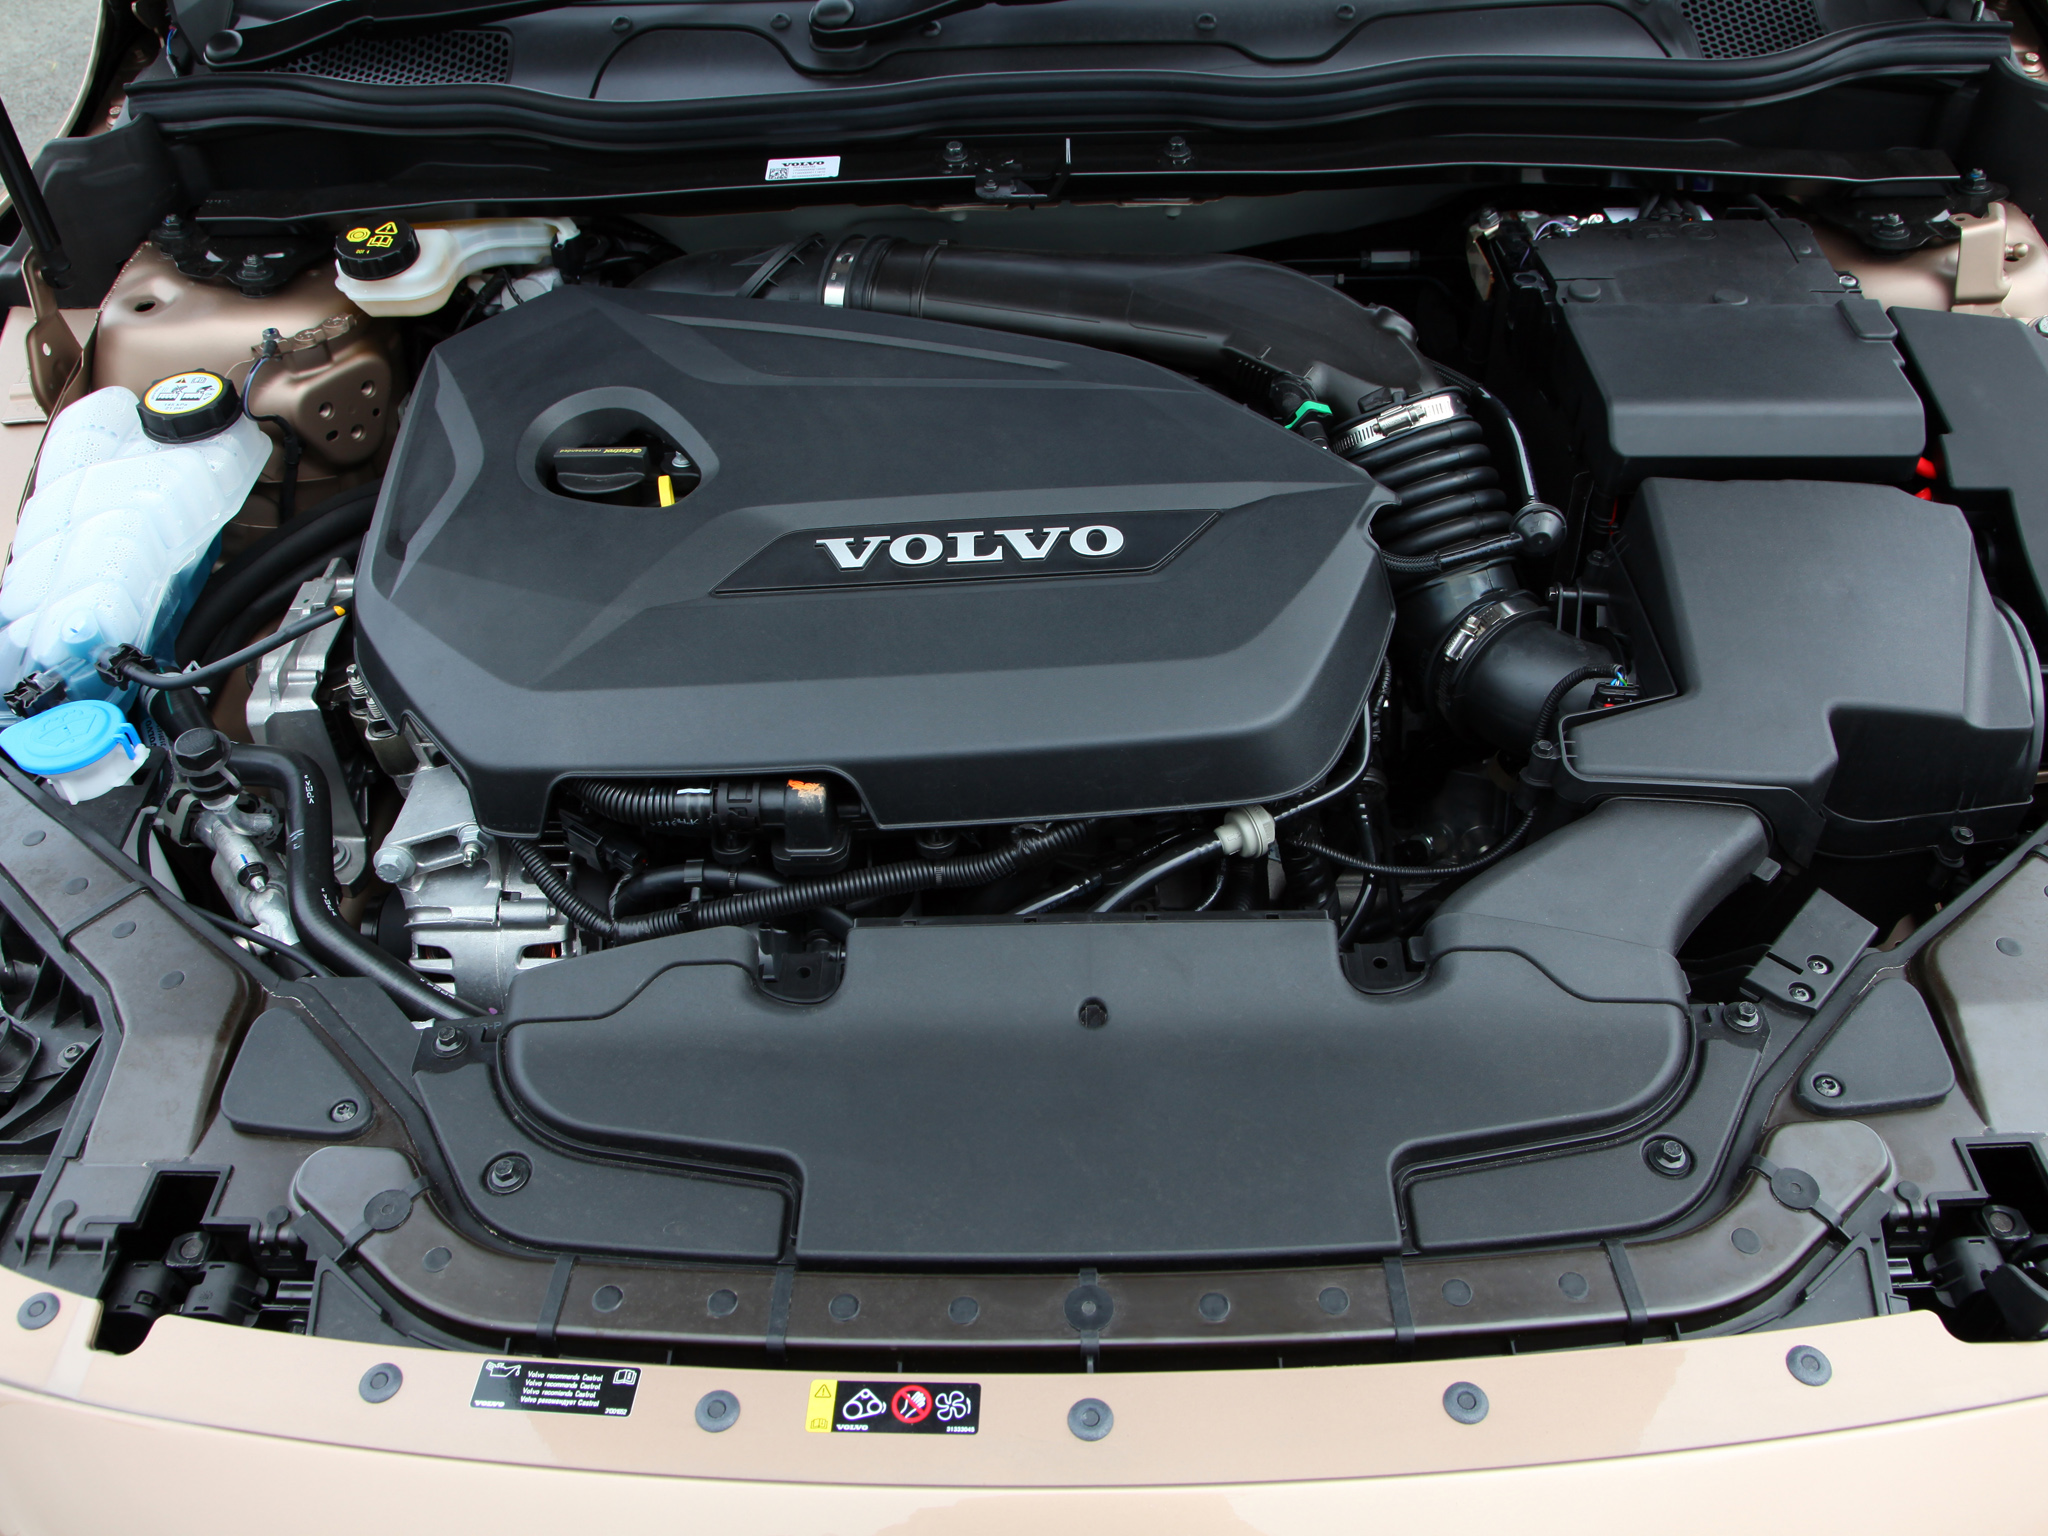 Volvo s60 двигатели. Двигатель b4164t Volvo s60. Двигатель Вольво s60 1.6t. Volvo s60 1.6. Volvo v40 двигатель.